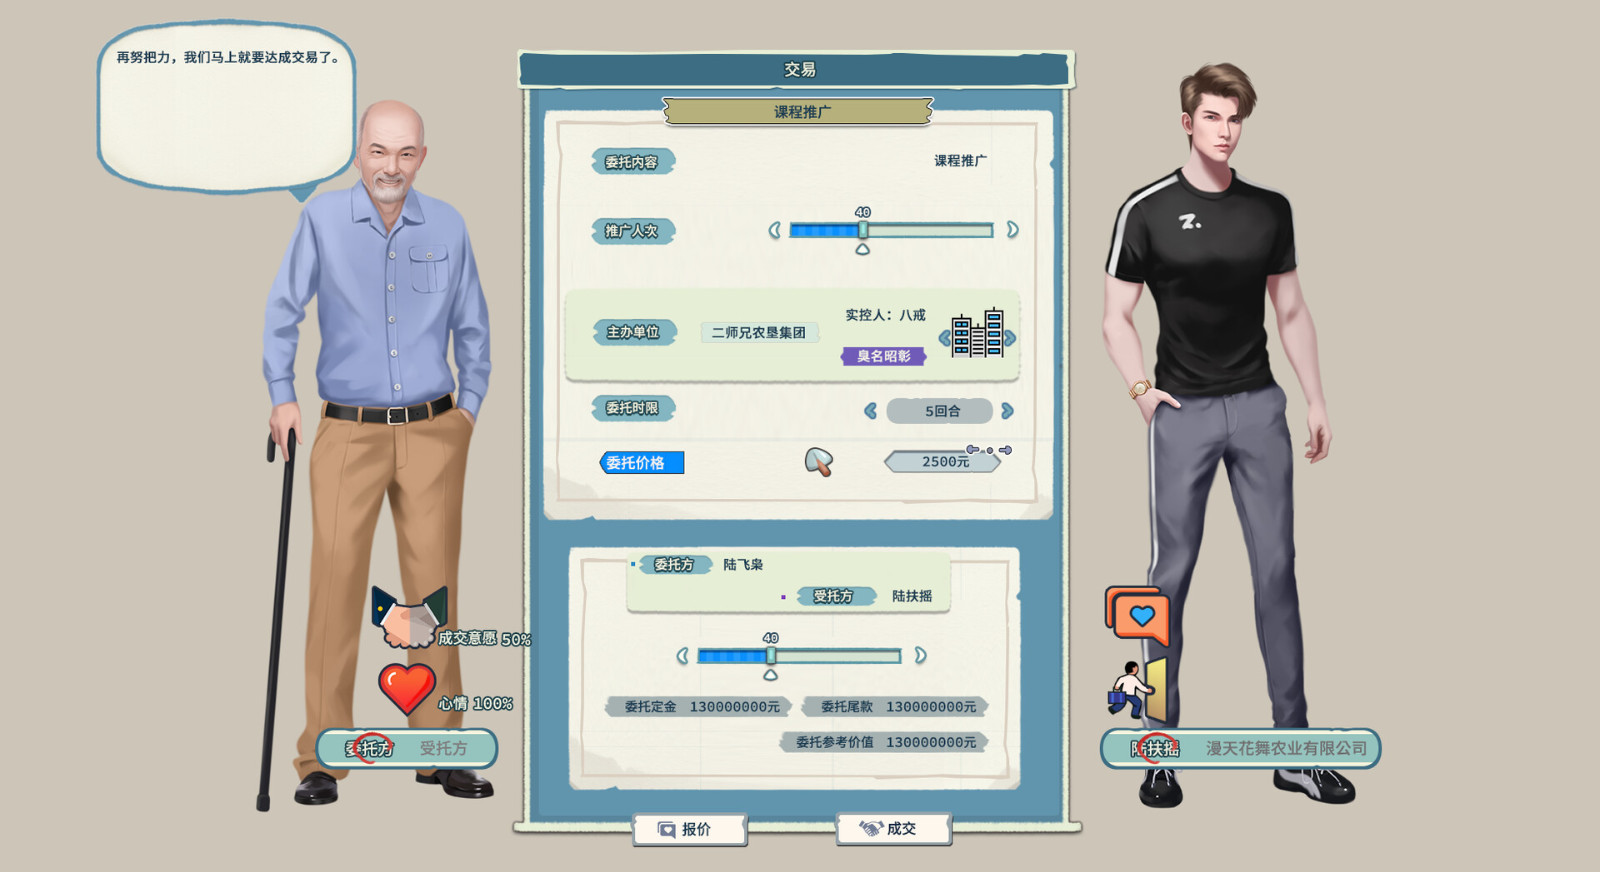 經營遊戲《山河行者》Steam頁面上線 支持簡體中文